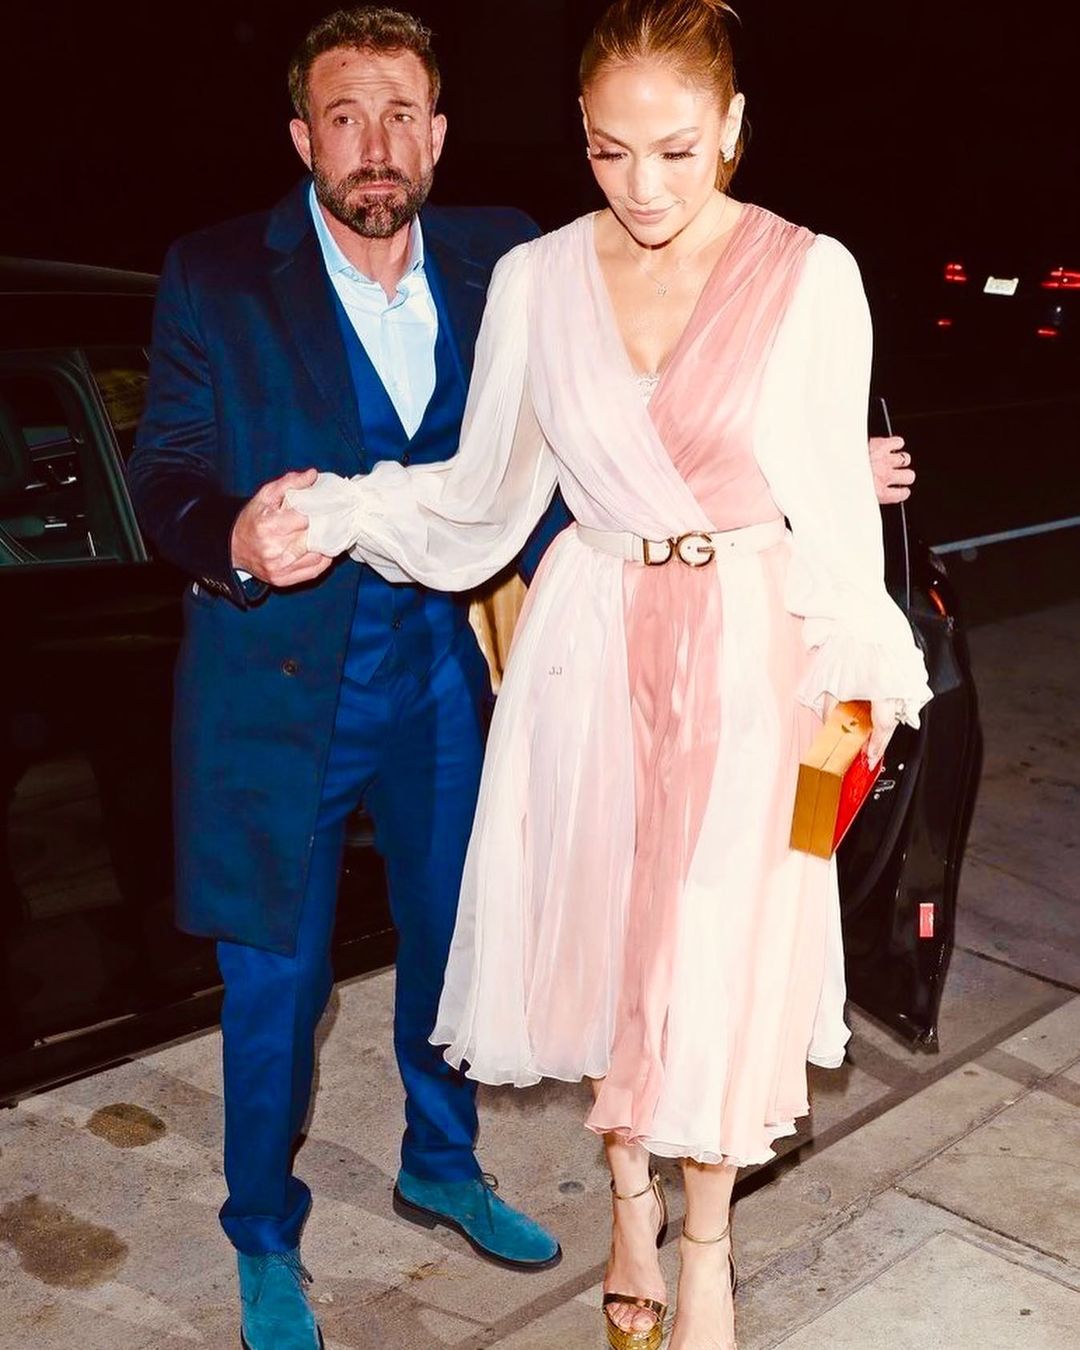 Бледно-розовое платье и красный клатч: Дженнифер Лопес поймали на свидании с Беном Аффлеком